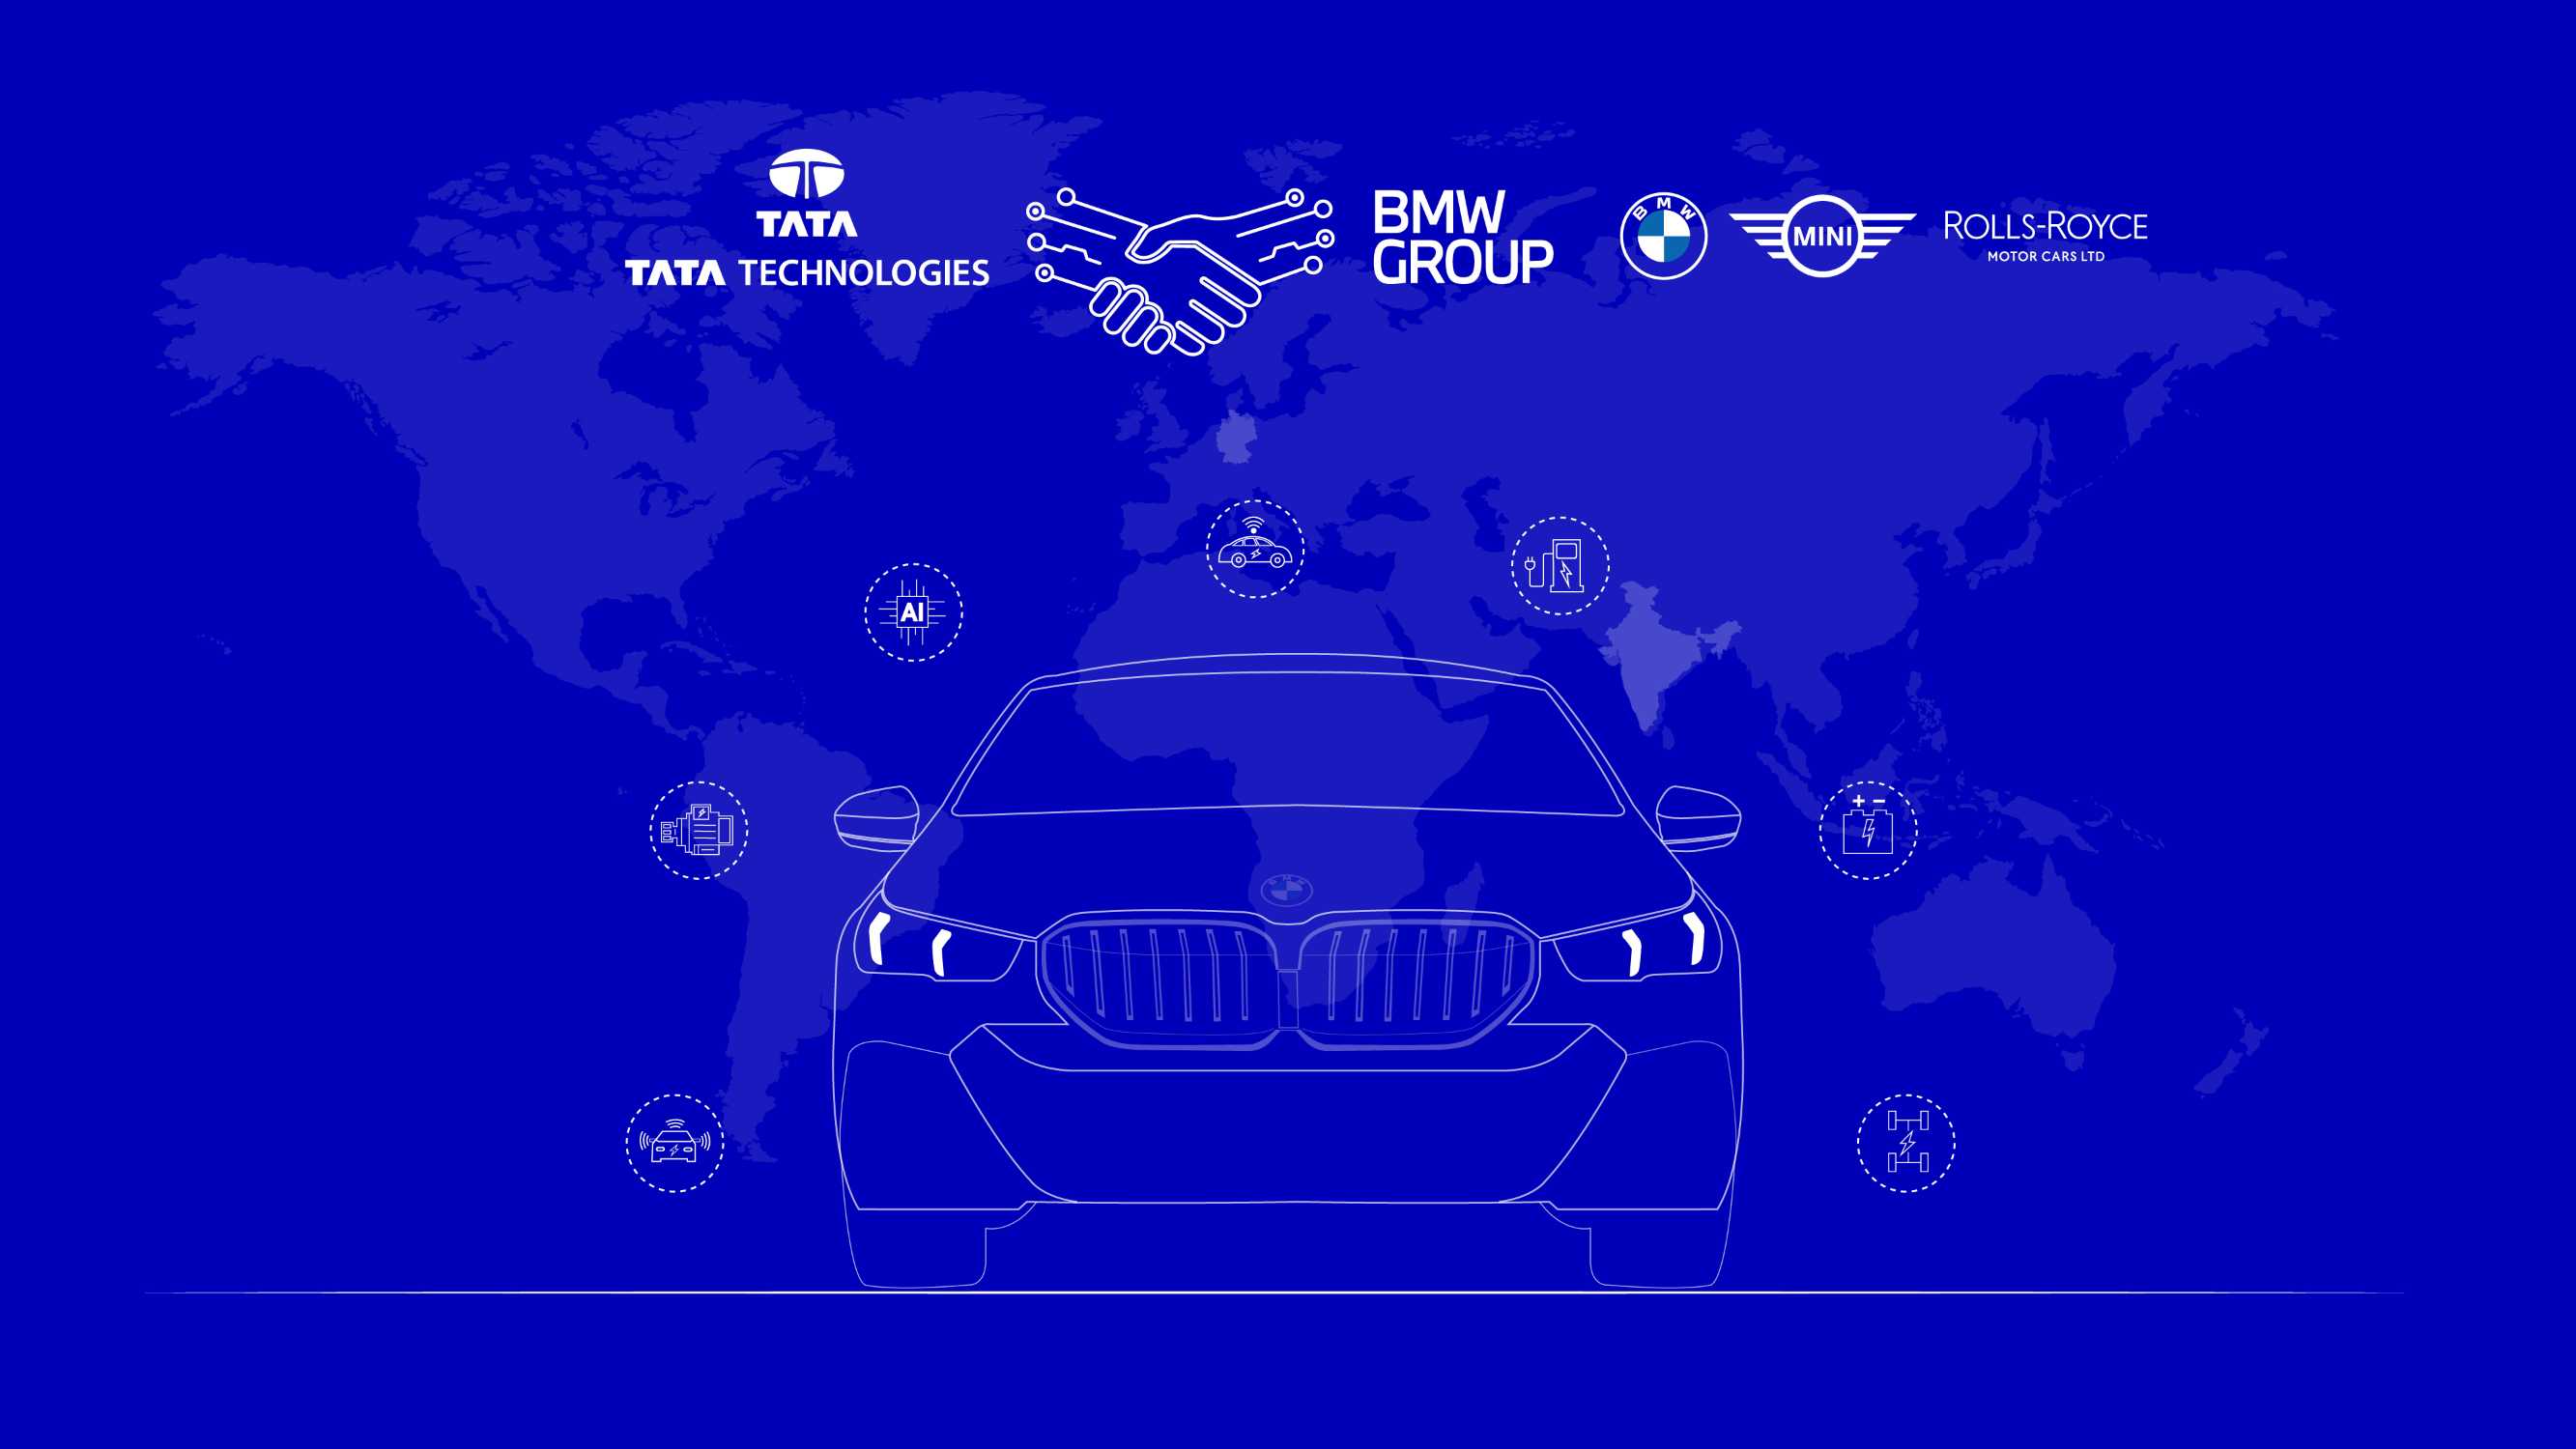 Die BMW Group und Tata Technologies wollen bei der Entwicklung von Automobilsoftware und Unternehmens-IT-Lösungen zusammenarbeiten.